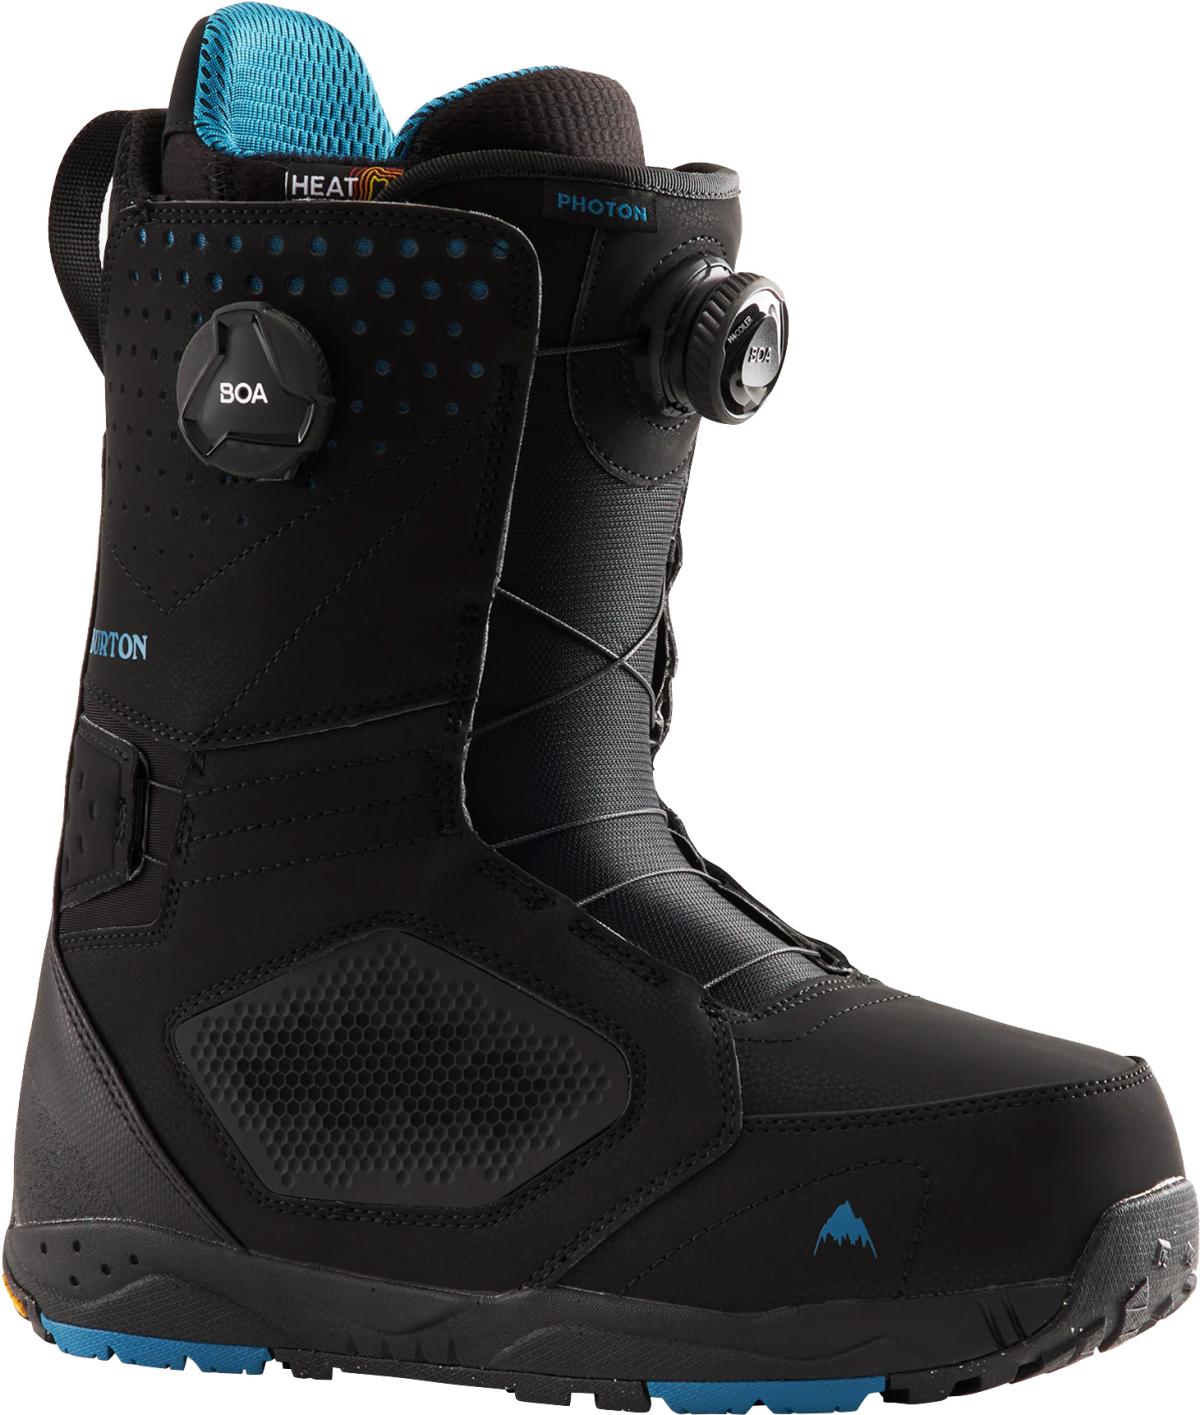 Burton Photon Boa snowboard boots